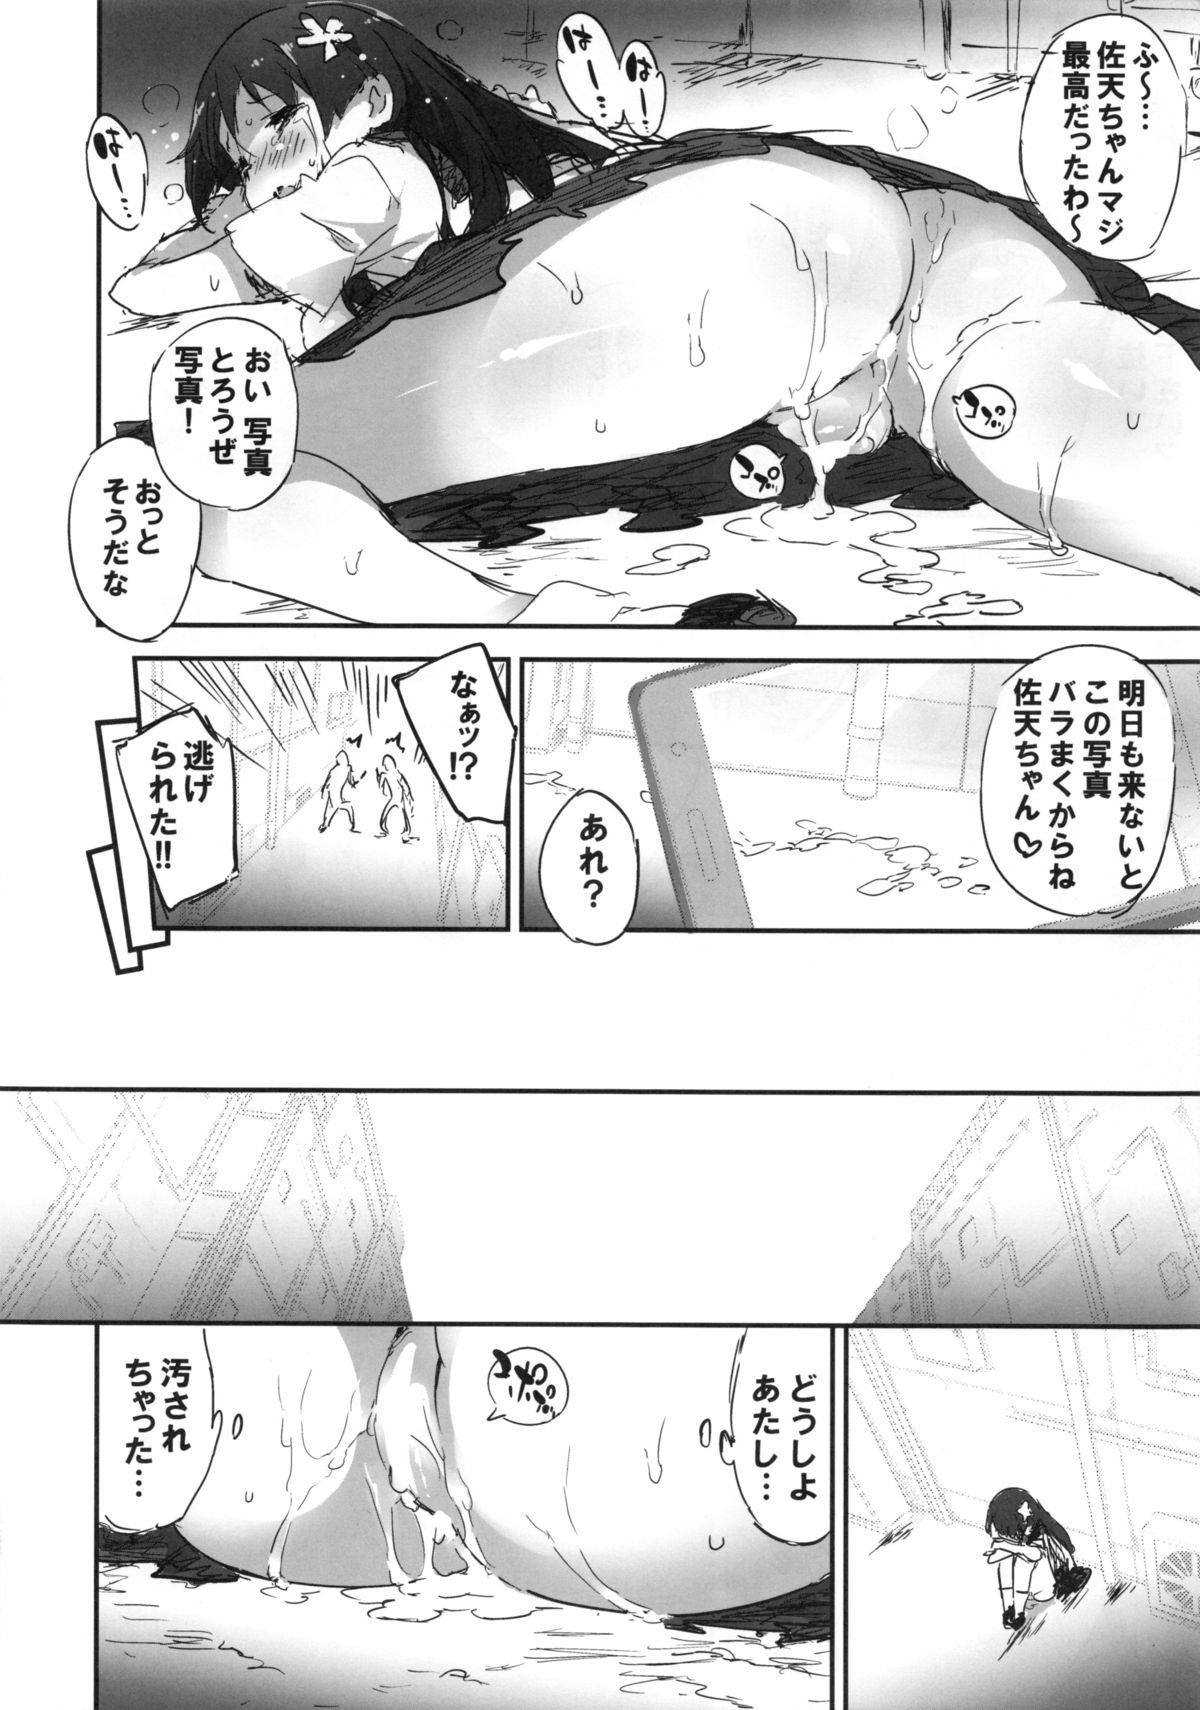 Hooker Rojiura Saten - Toaru kagaku no railgun Ninfeta - Page 11